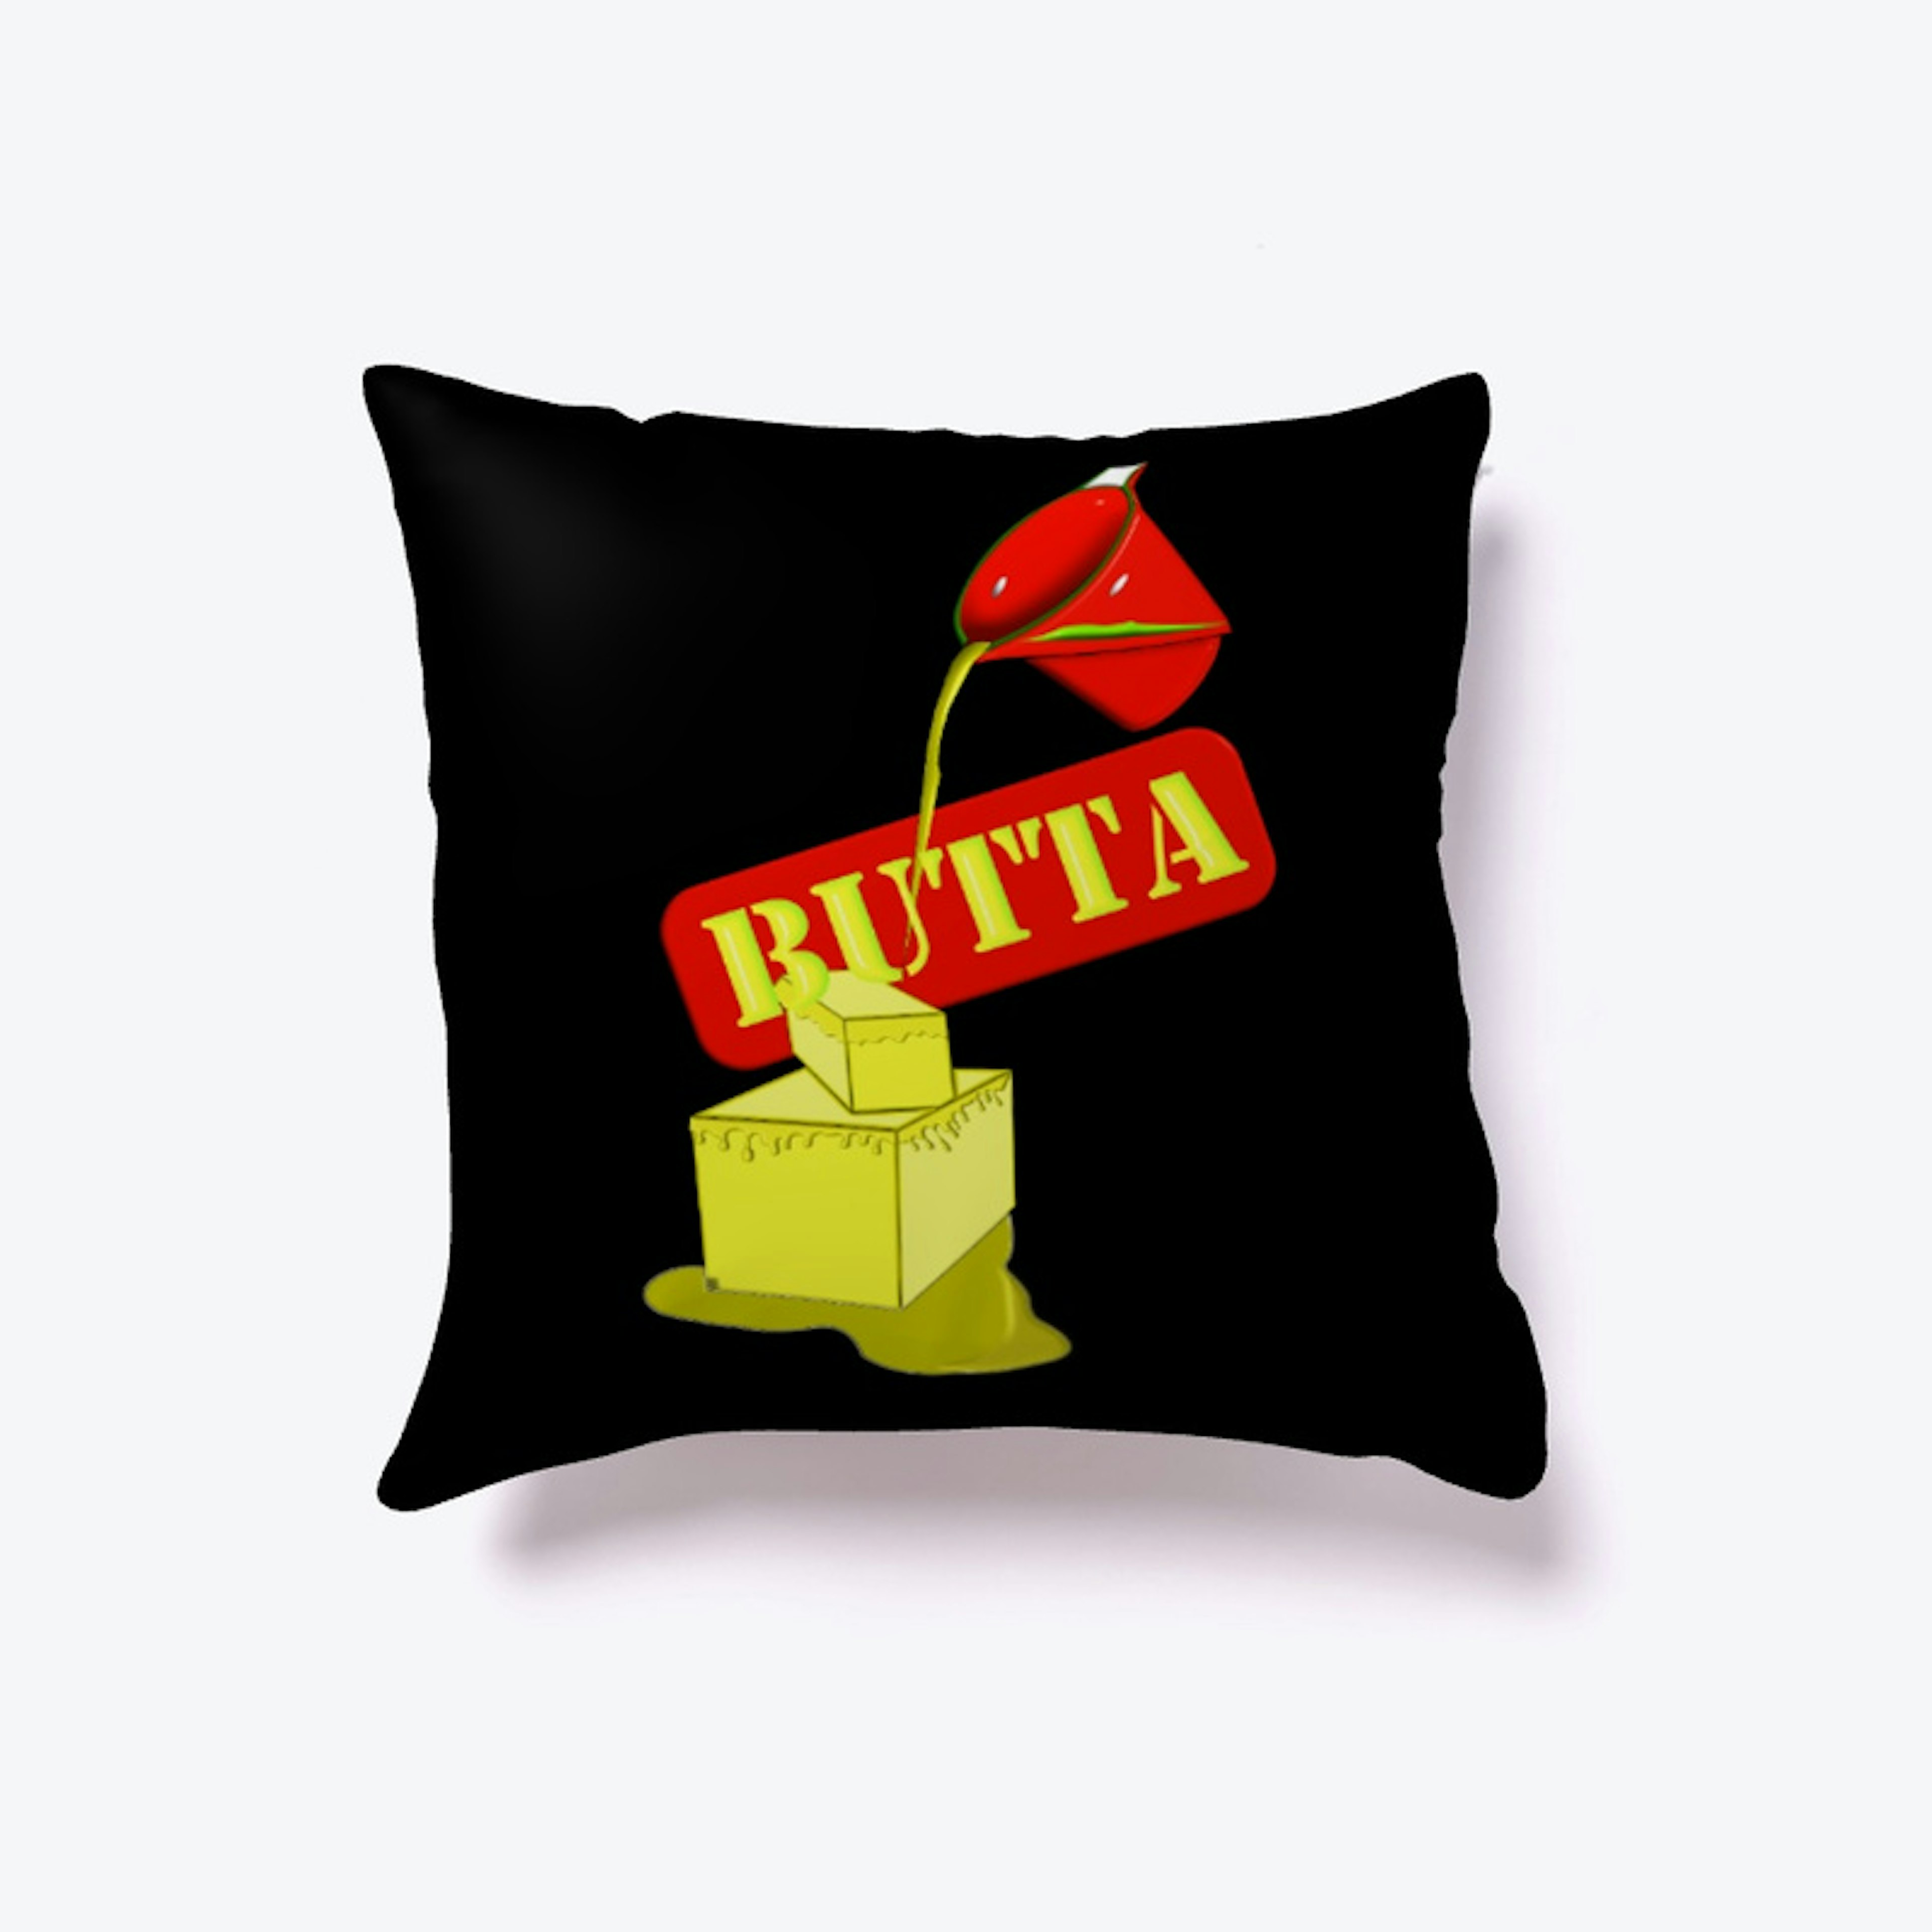 "Butta" rojo collection